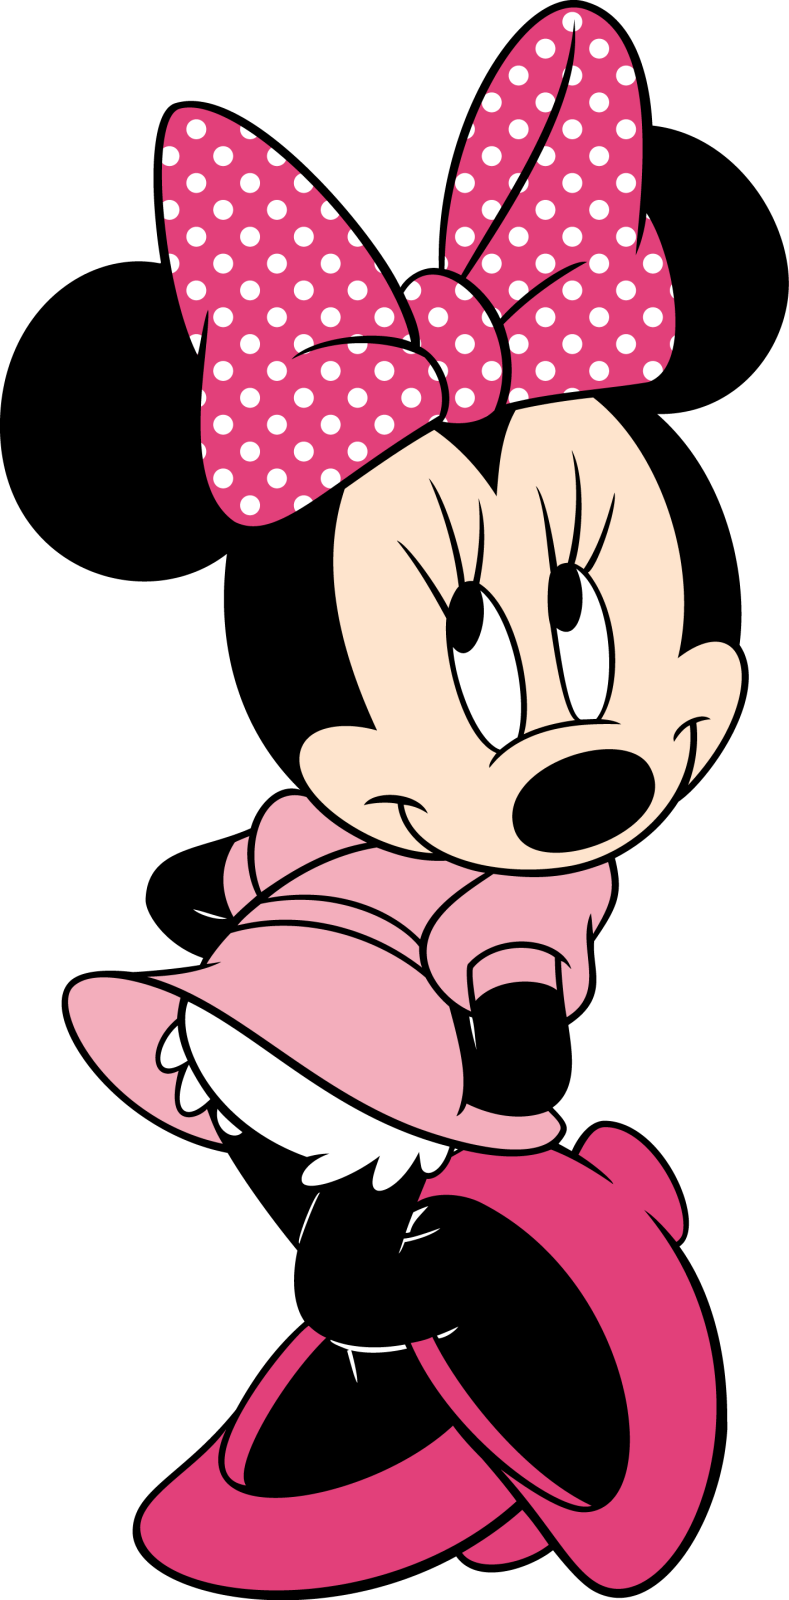 Descargar Imágenes Gratis: Minnie Mouse PNG Sin Fondo - Cliparts.co